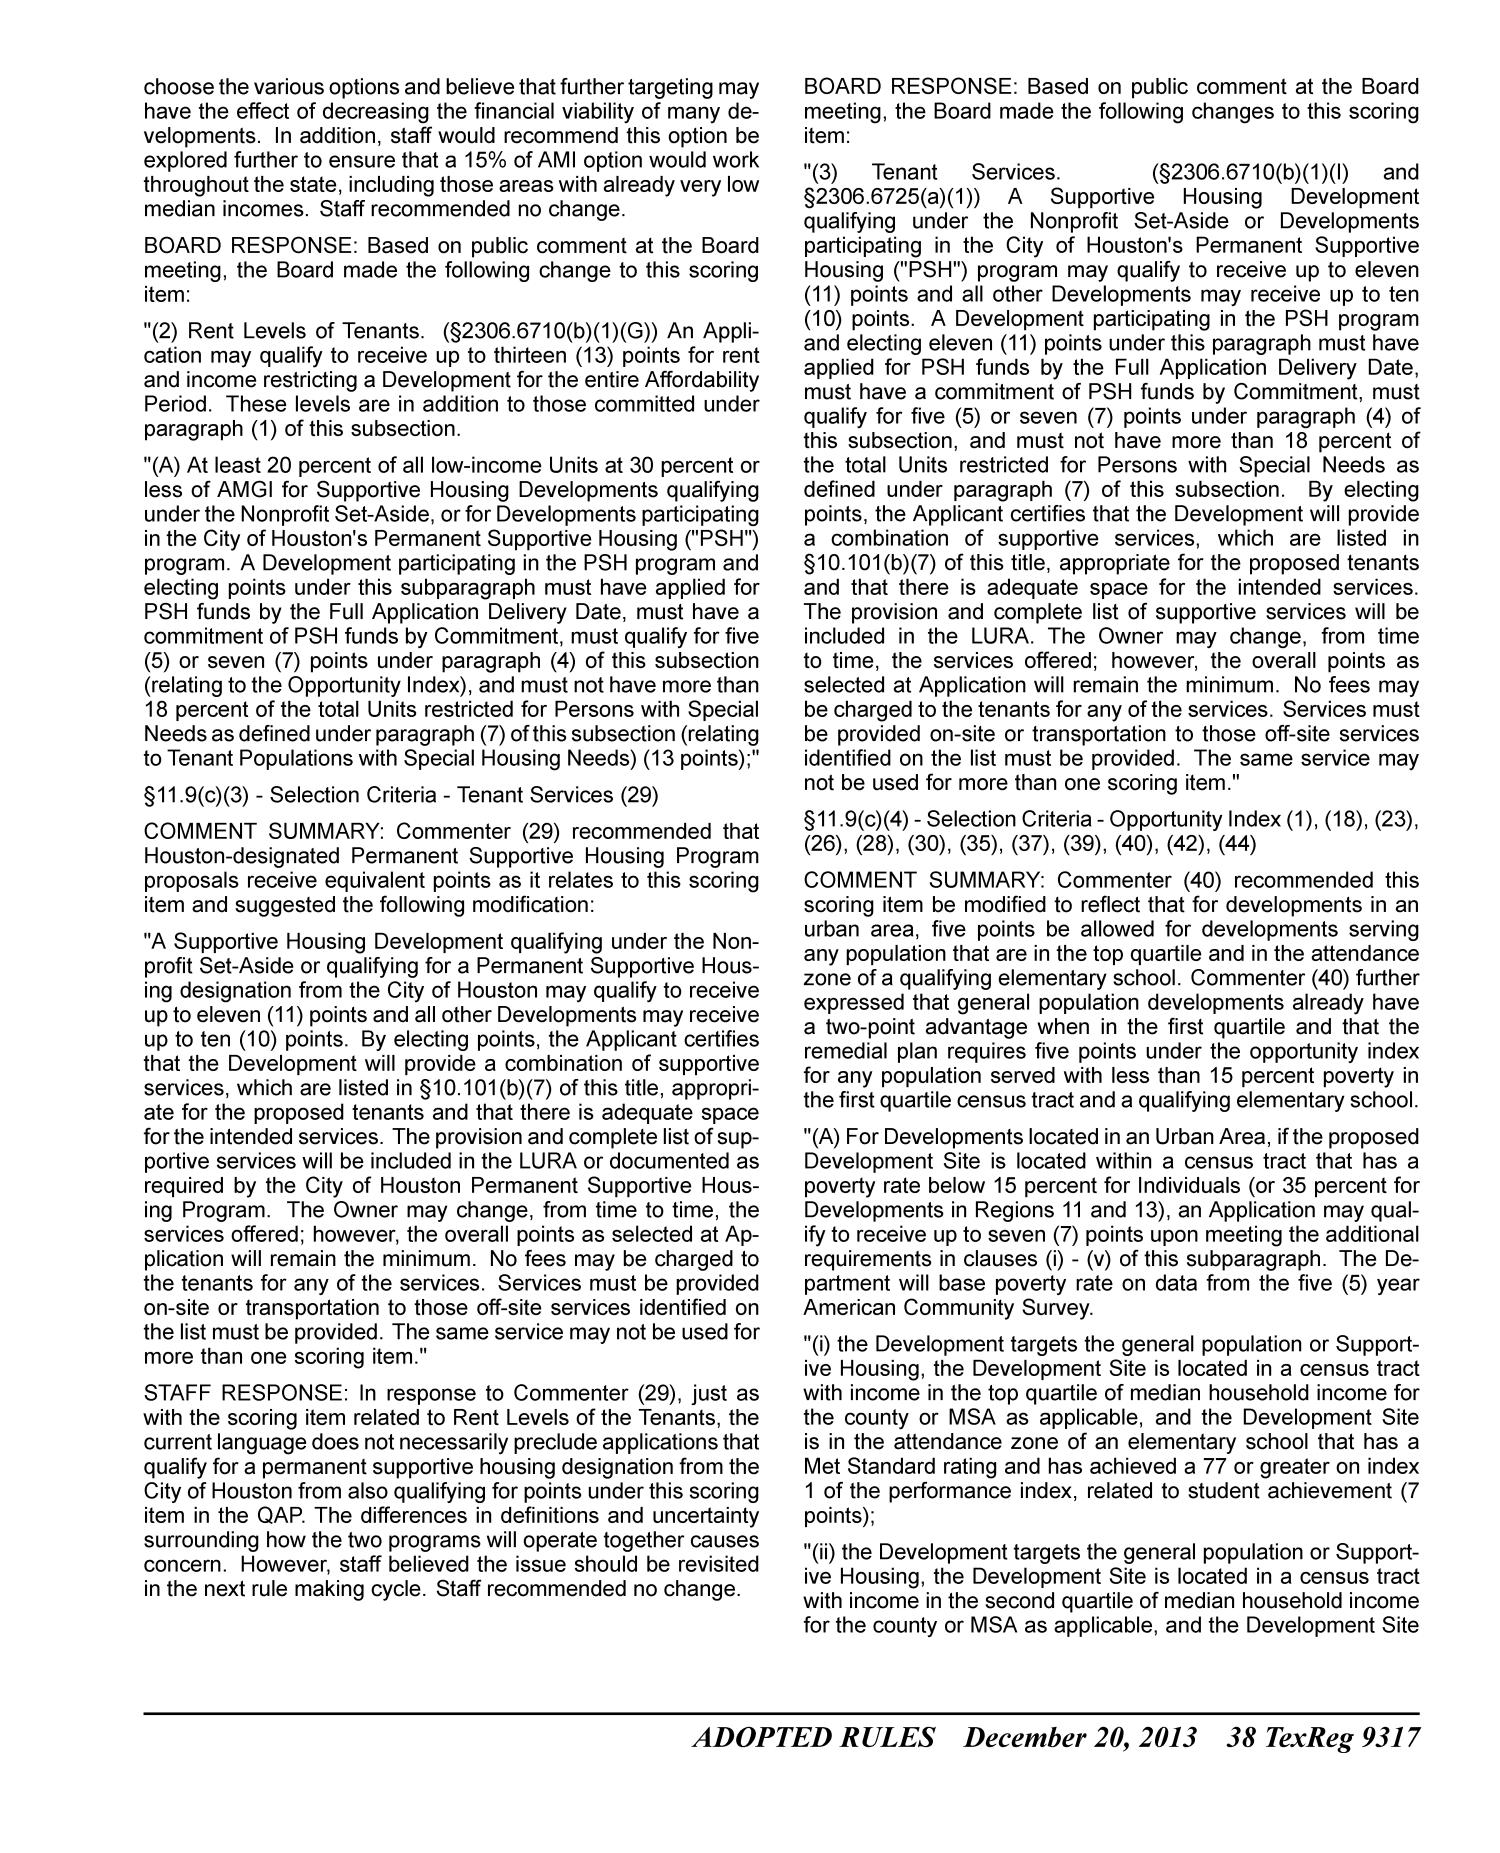 Texas Register, Volume 38, Number 51, Pages 9155-9408, December 20, 2013
                                                
                                                    9317
                                                